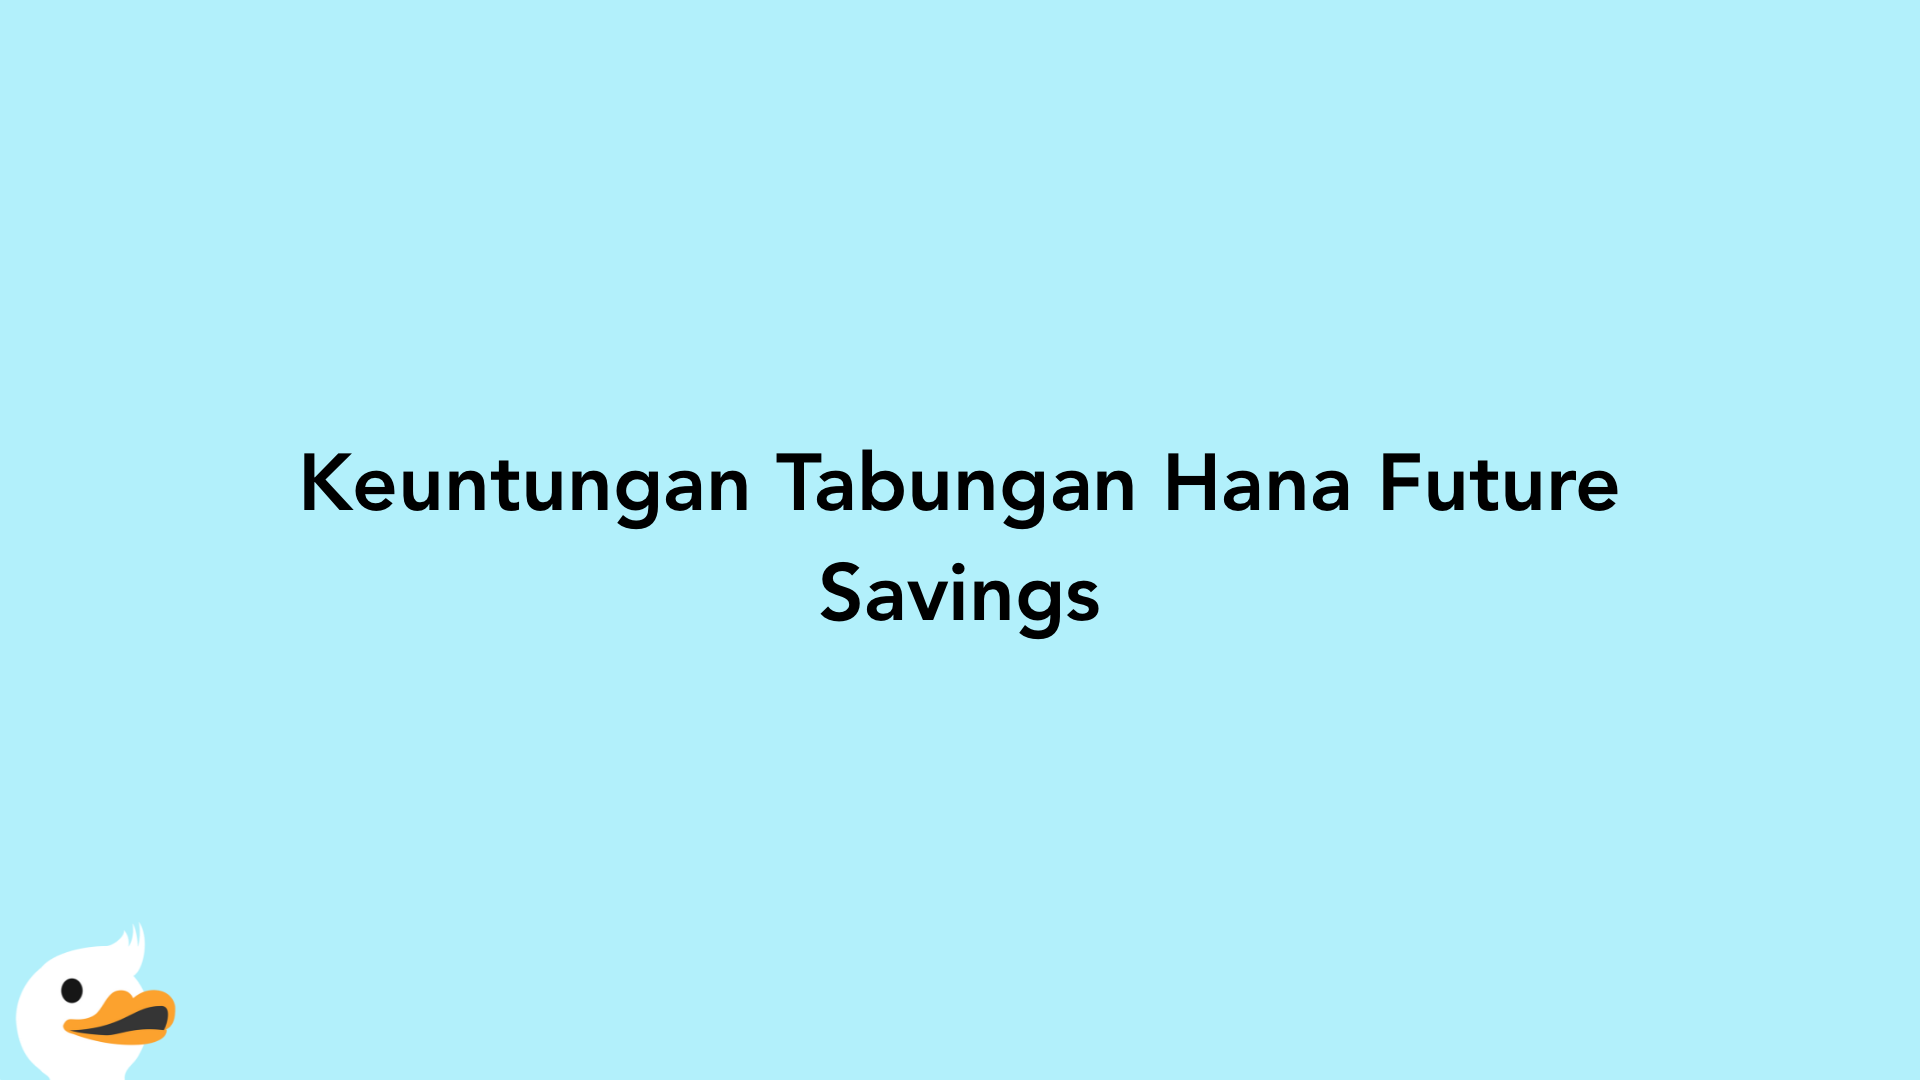 Keuntungan Tabungan Hana Future Savings